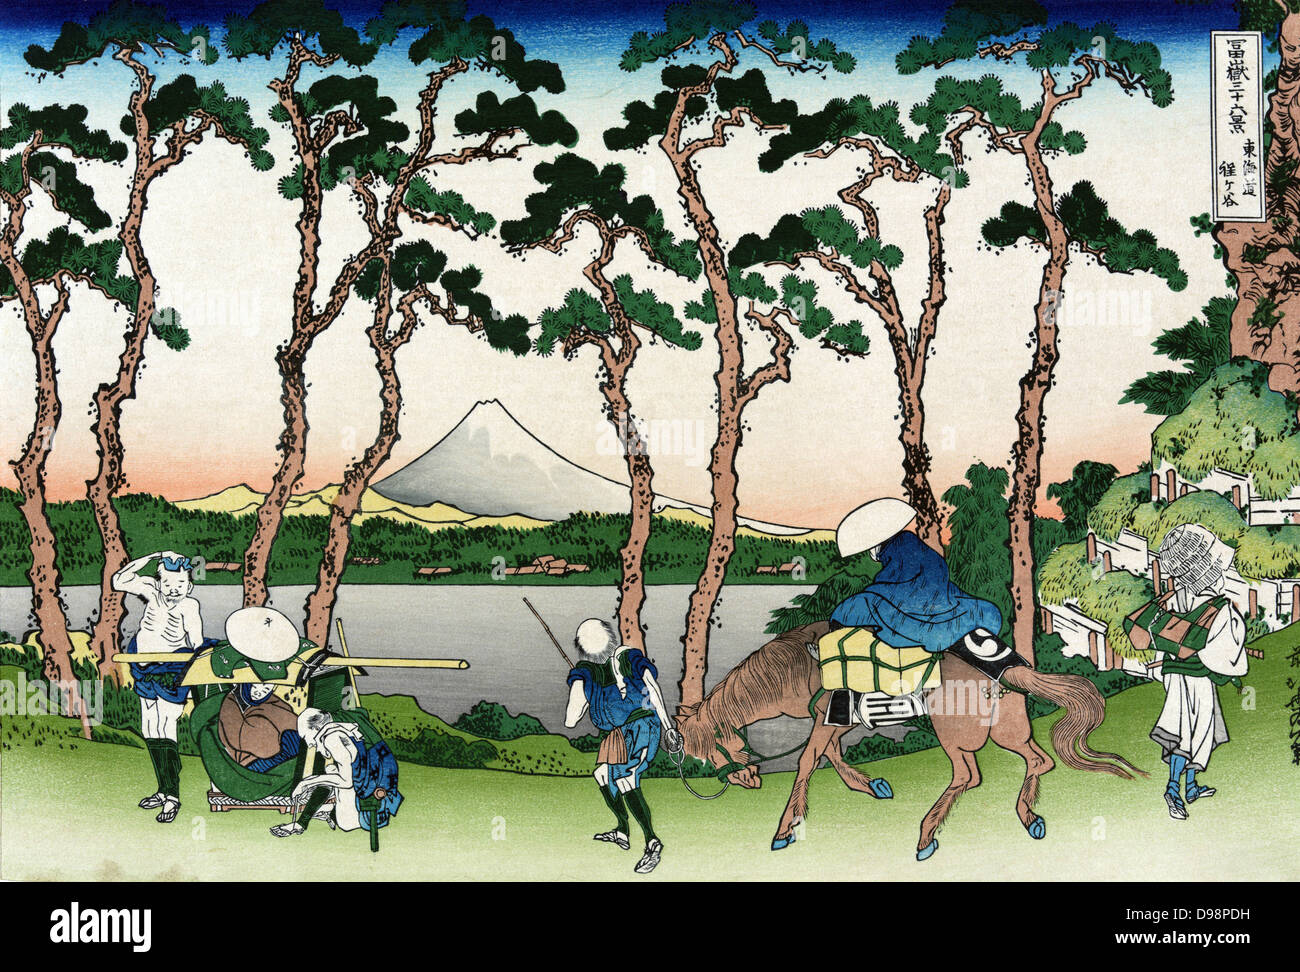 Des voyageurs à Hodogaya sur le Tokaido Road, le Mont Fuji en arrière-plan. À partir de 'trente-six vues du Mont Fuji", c1831. Katsushika Hokusai (1760-1849) artiste japonais Ukiyo-e. Cheval Transport Chaise Arbre Paysage Pin piétonne Banque D'Images